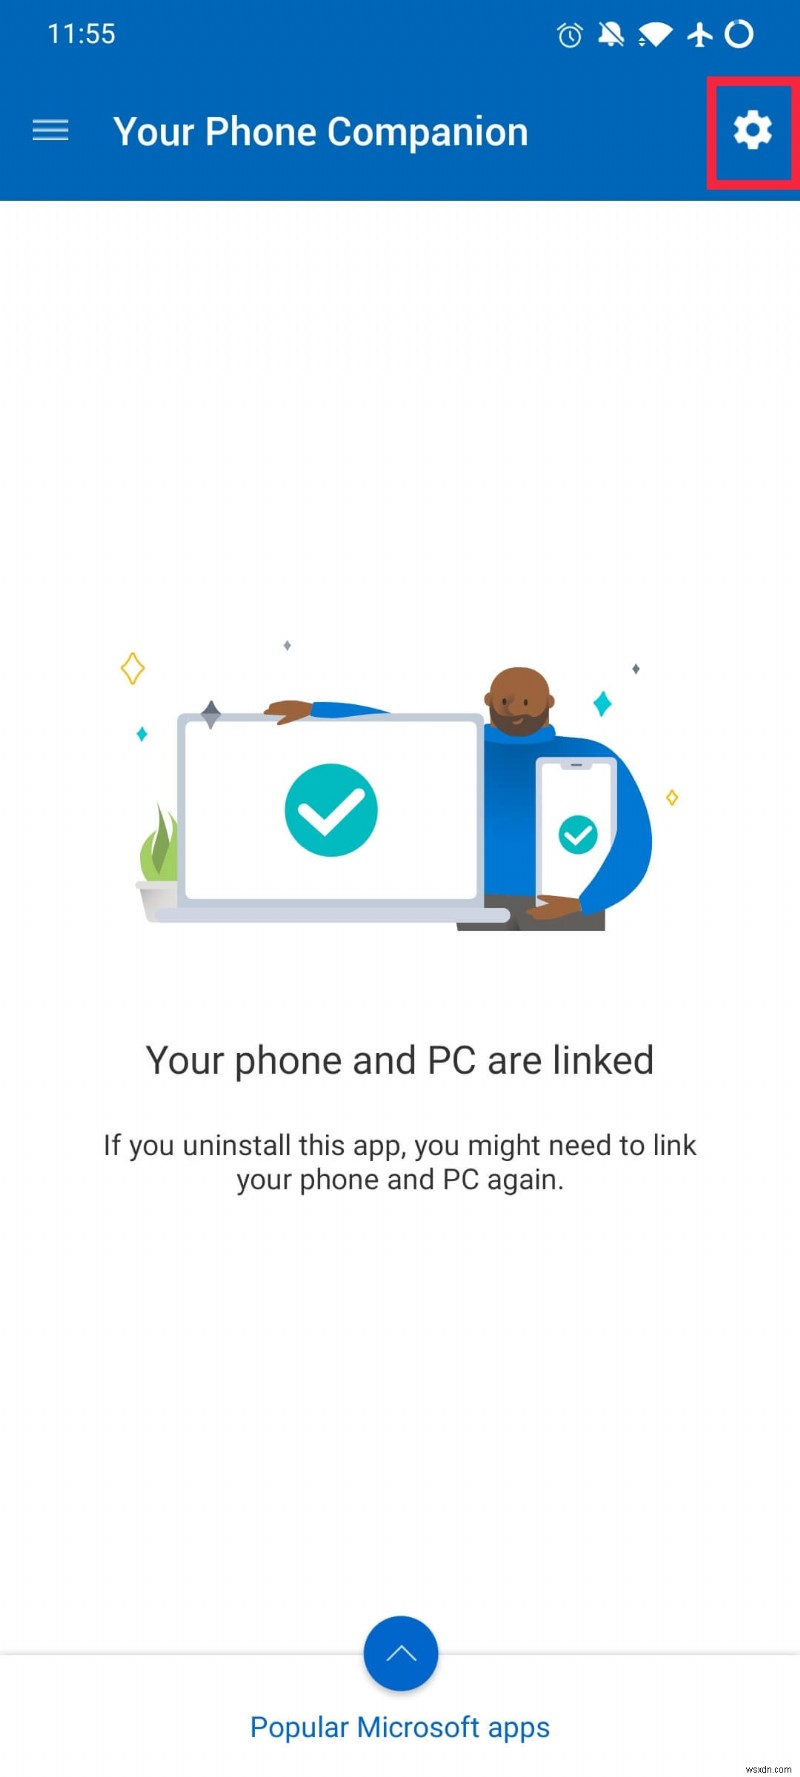 Windows 10 में YourPhone.exe प्रक्रिया क्या है? इसे कैसे निष्क्रिय करें?